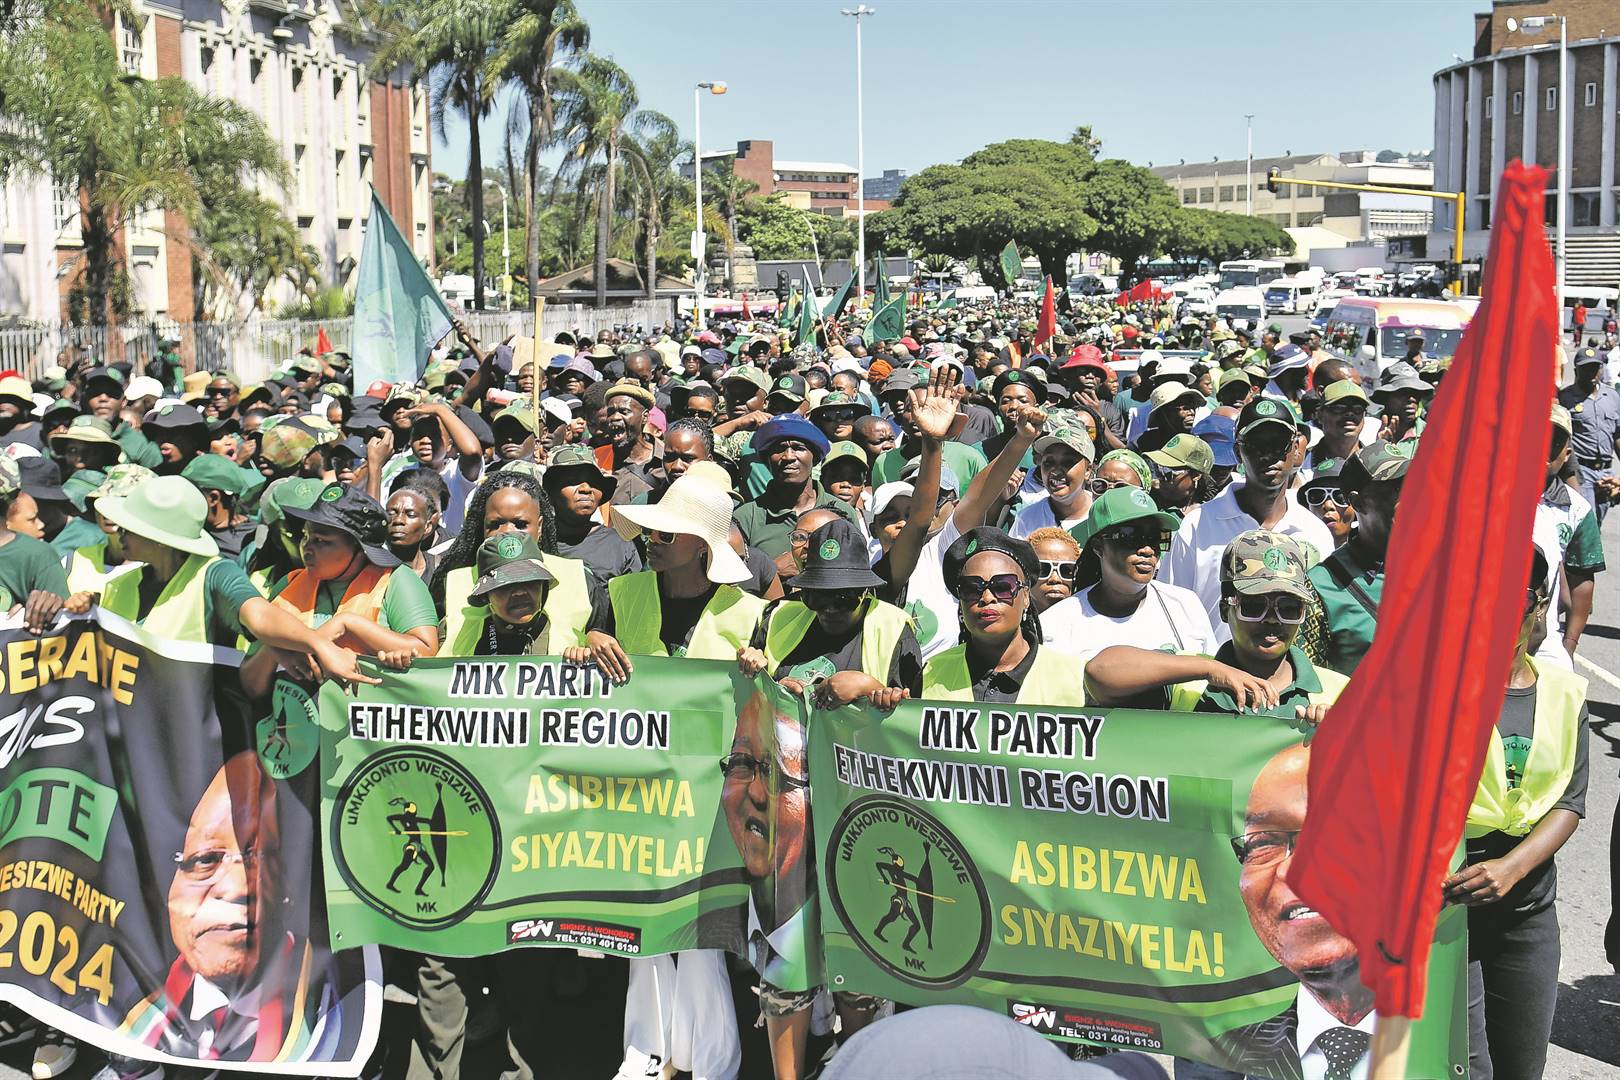 News24 | Zuma's Umkhonto weSizwe Party 'forged’ signatures to meet IEC threshold